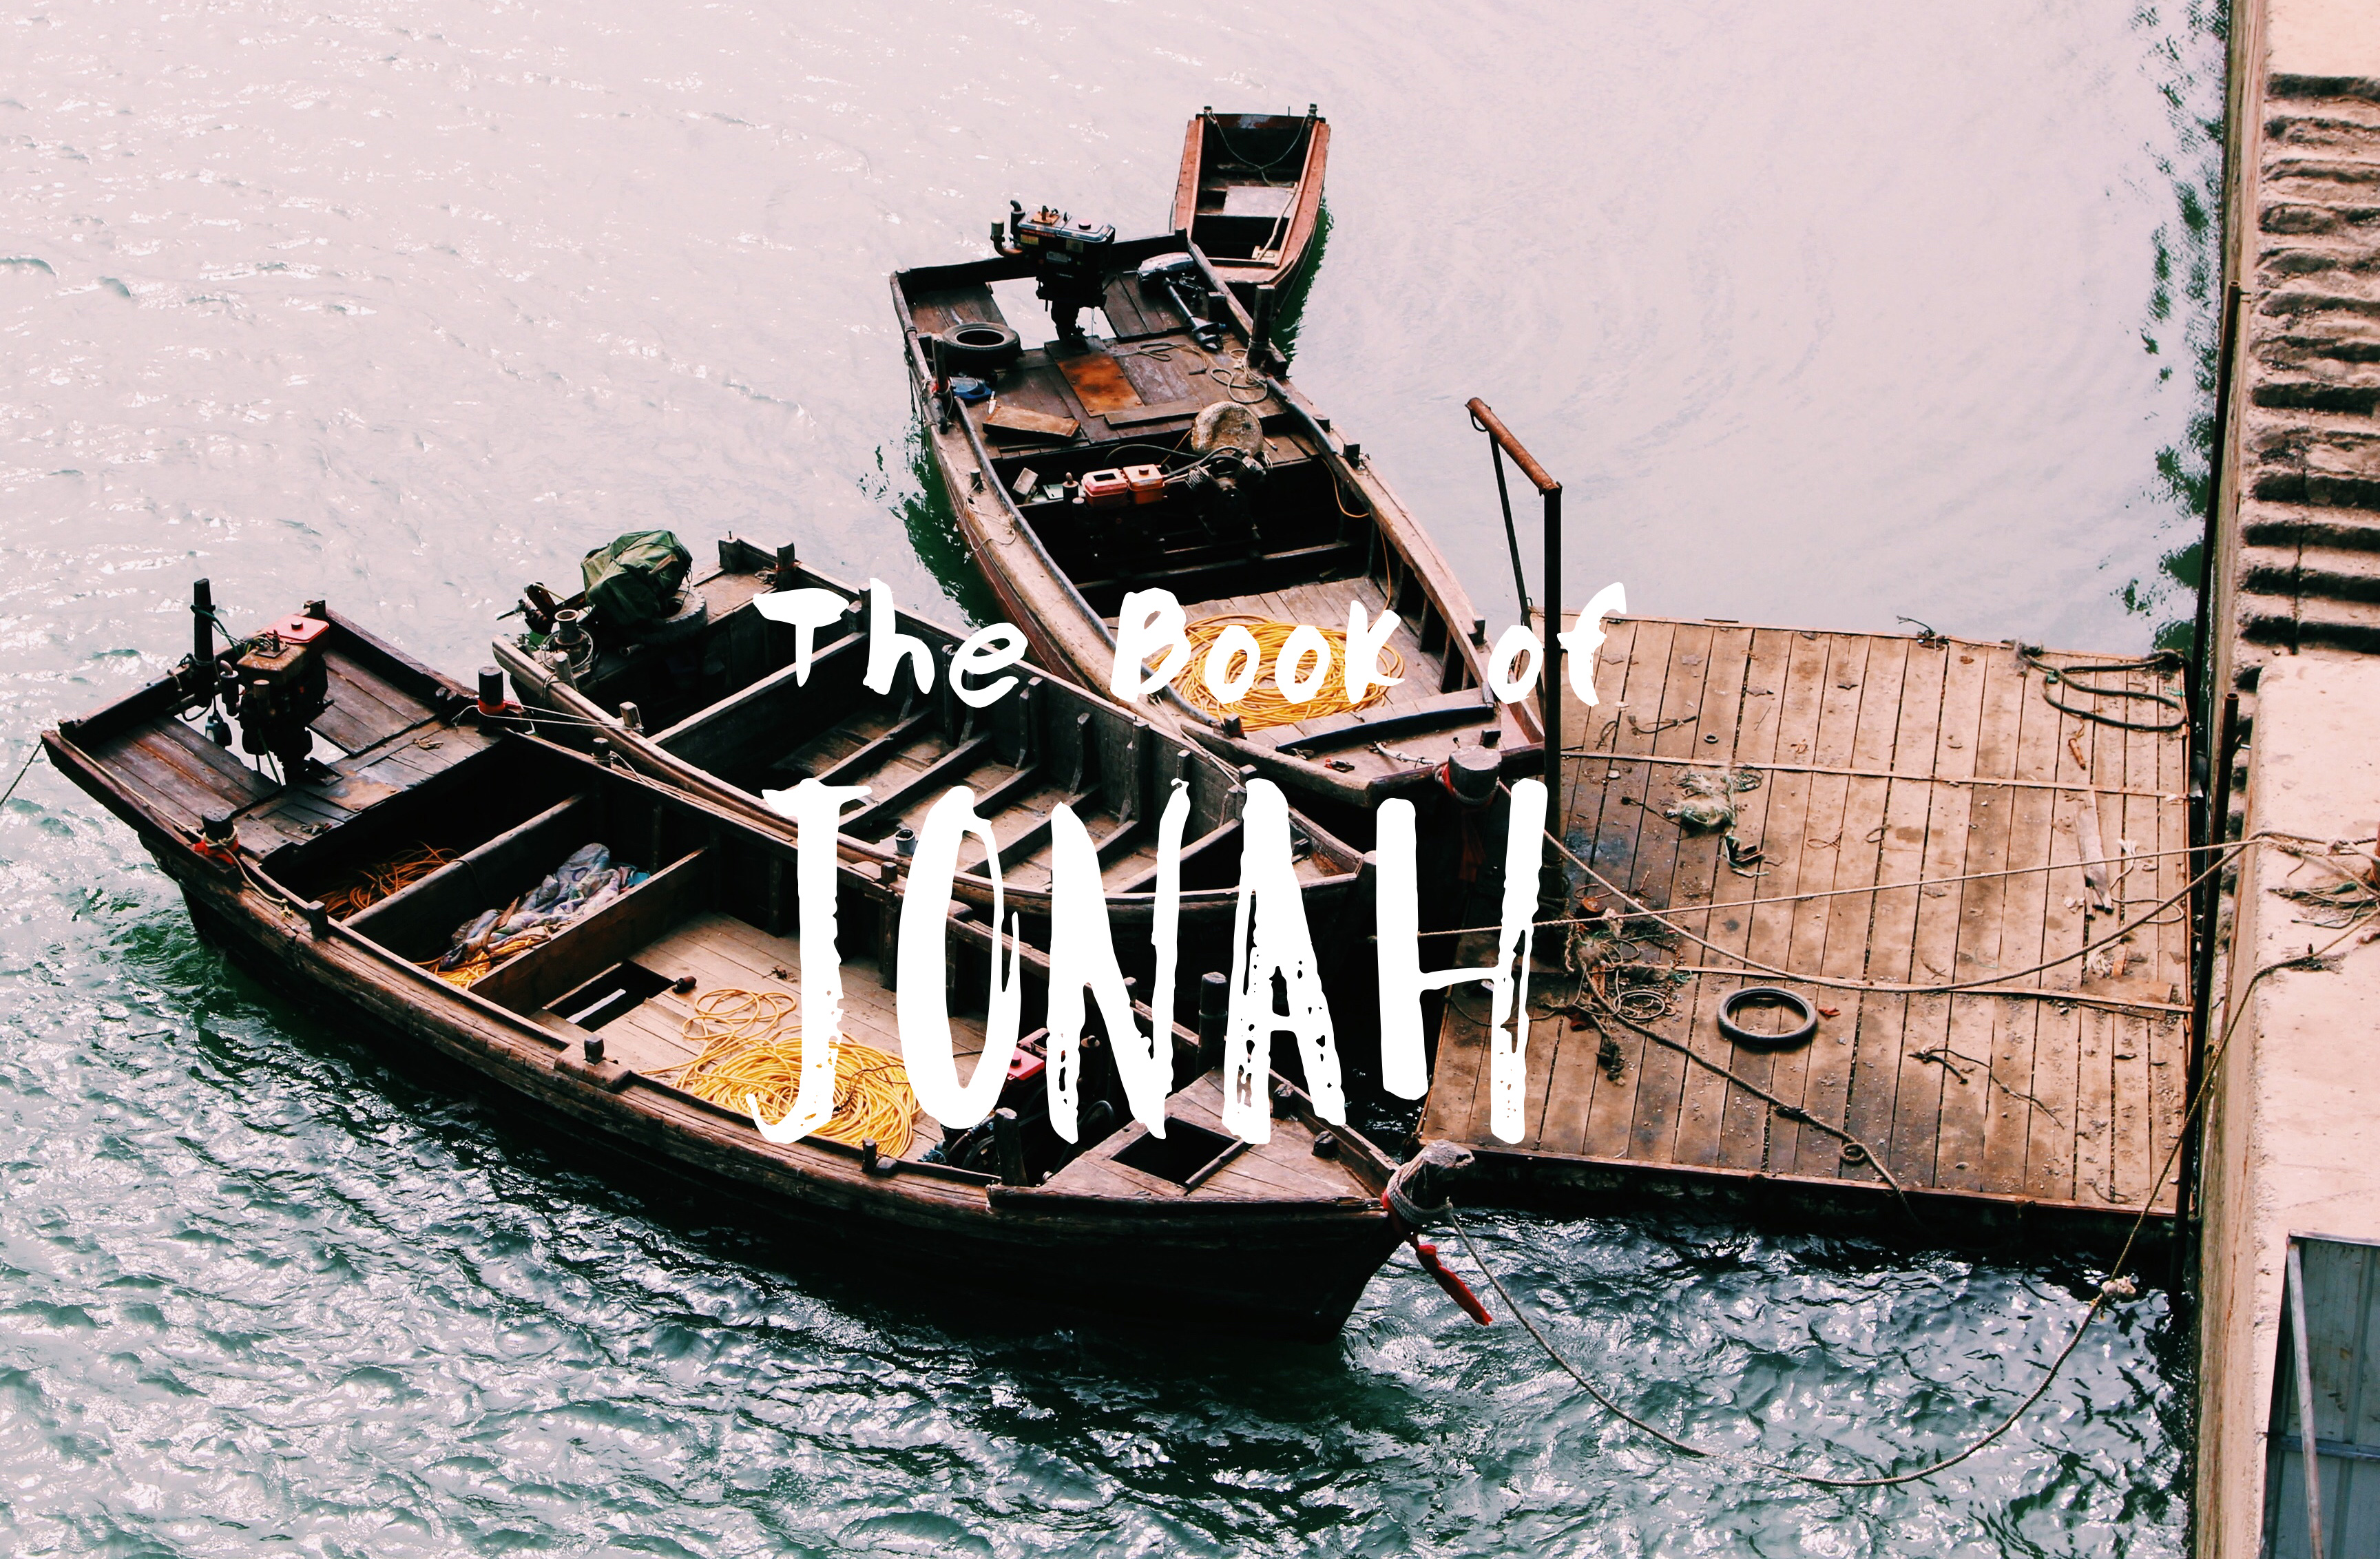 Jonah banner